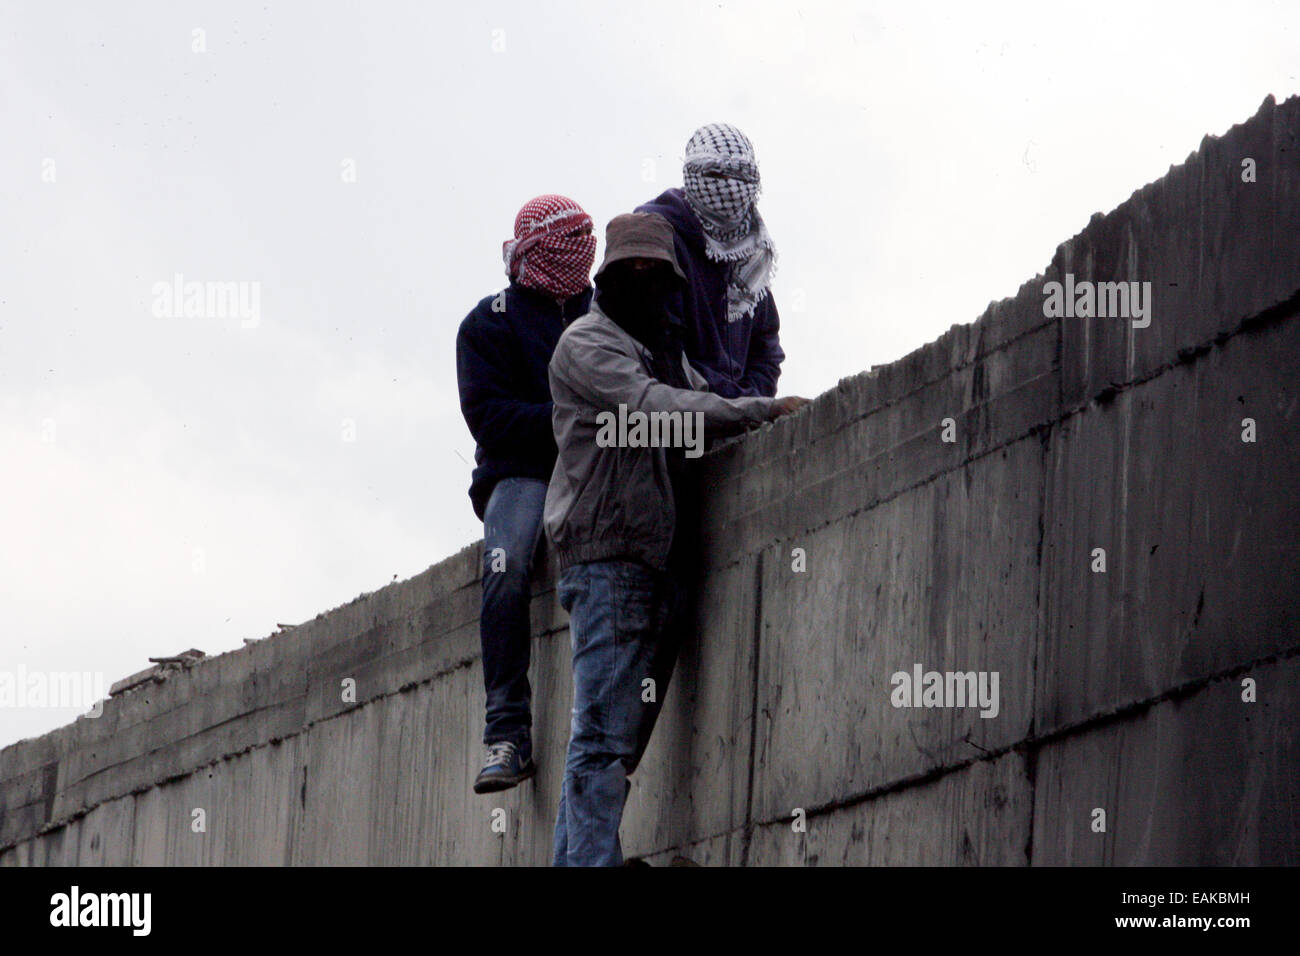 Abu Dis. 17 novembre, 2014. Les Palestiniens d'un mur d'escalade dans la ville d'Abu Dis, à l'Est de Jérusalem. Credit : PACIFIC PRESS/Alamy Live News Banque D'Images